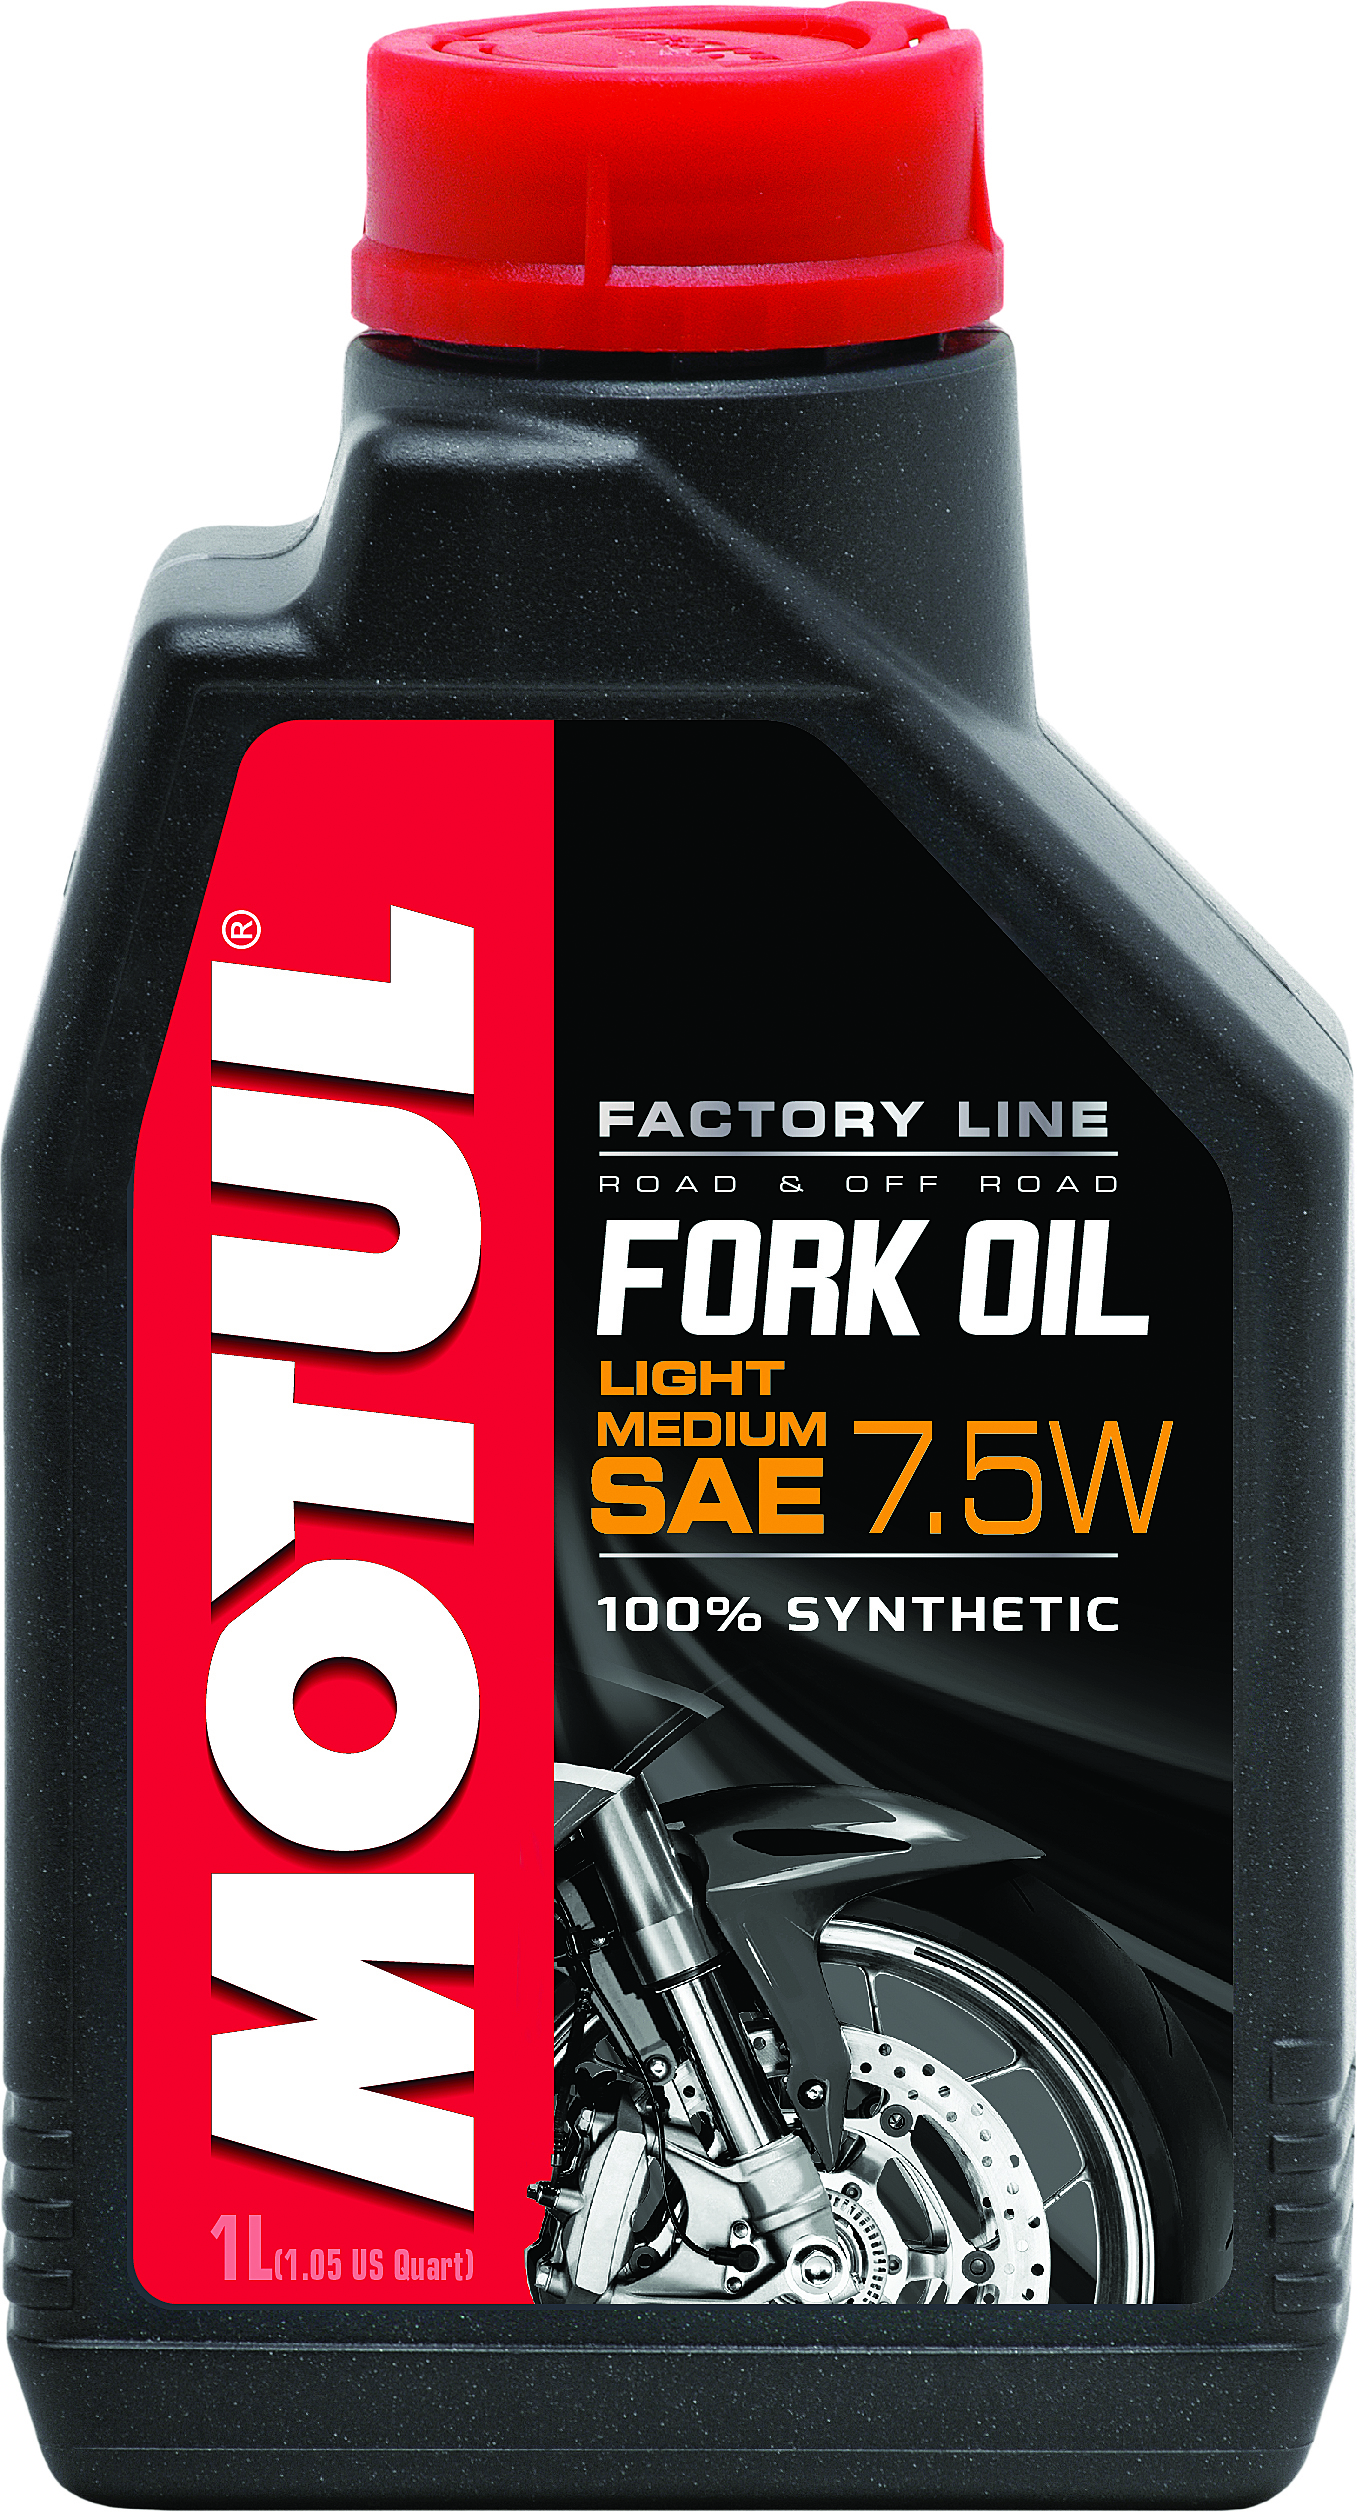 Motul - Fork Oil Factory Line 7.5w 1 L - 105926